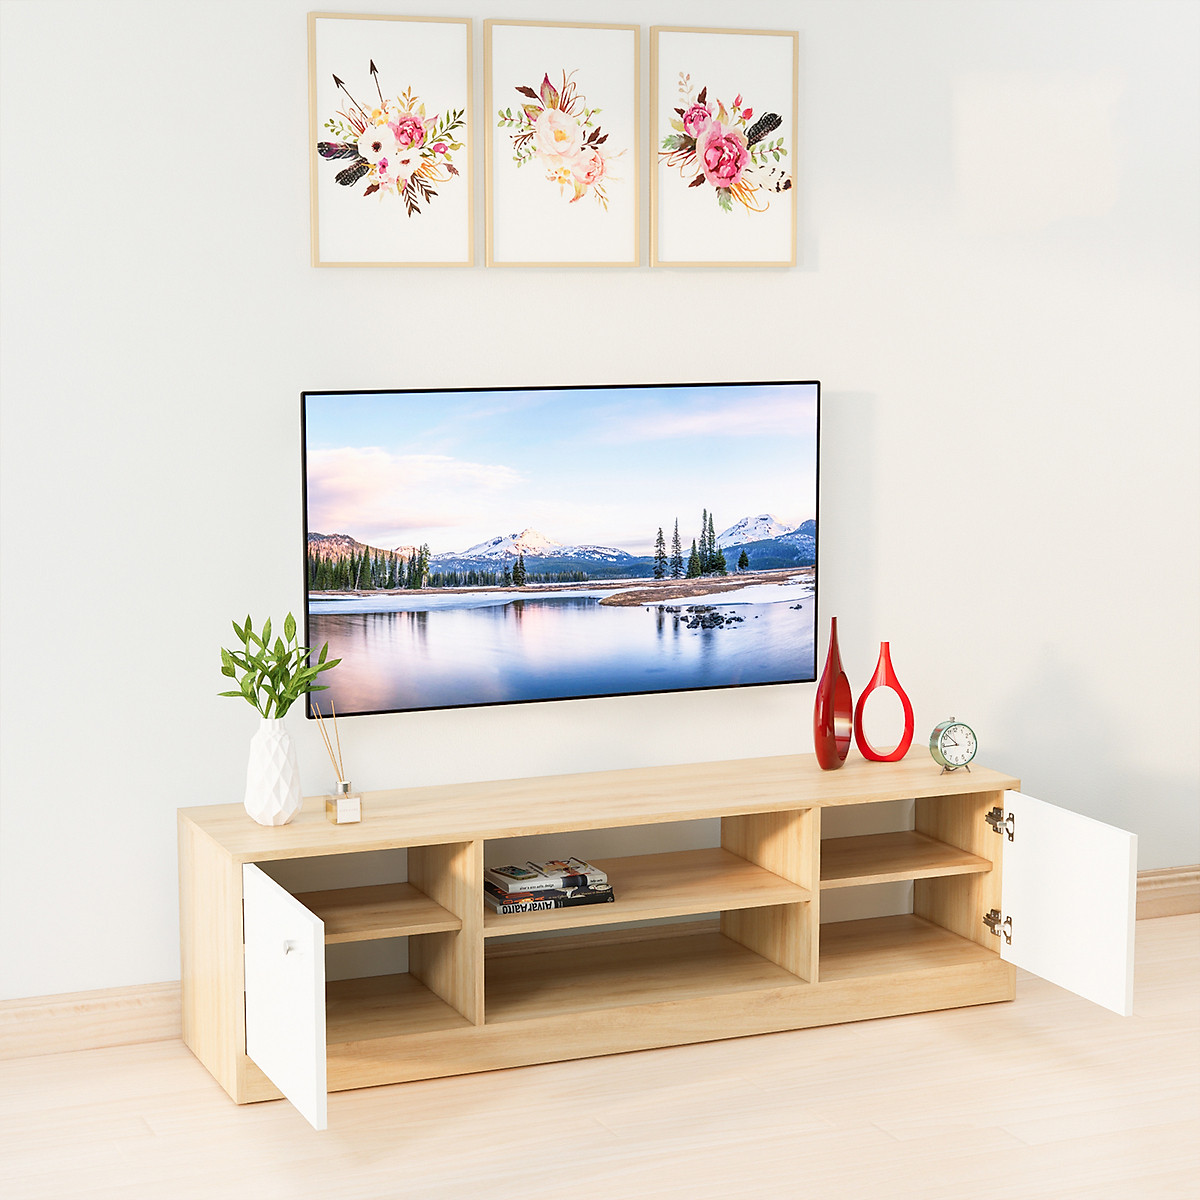 Kệ tivi phòng khách hiện đại là một phần không thể thiếu trong thiết kế nội thất nhà bạn. Những sản phẩm này sẽ giúp tạo ra một không gian thoải mái và chức năng, để bạn và gia đình trải nghiệm những giây phút thư giãn và giải trí tuyệt vời.